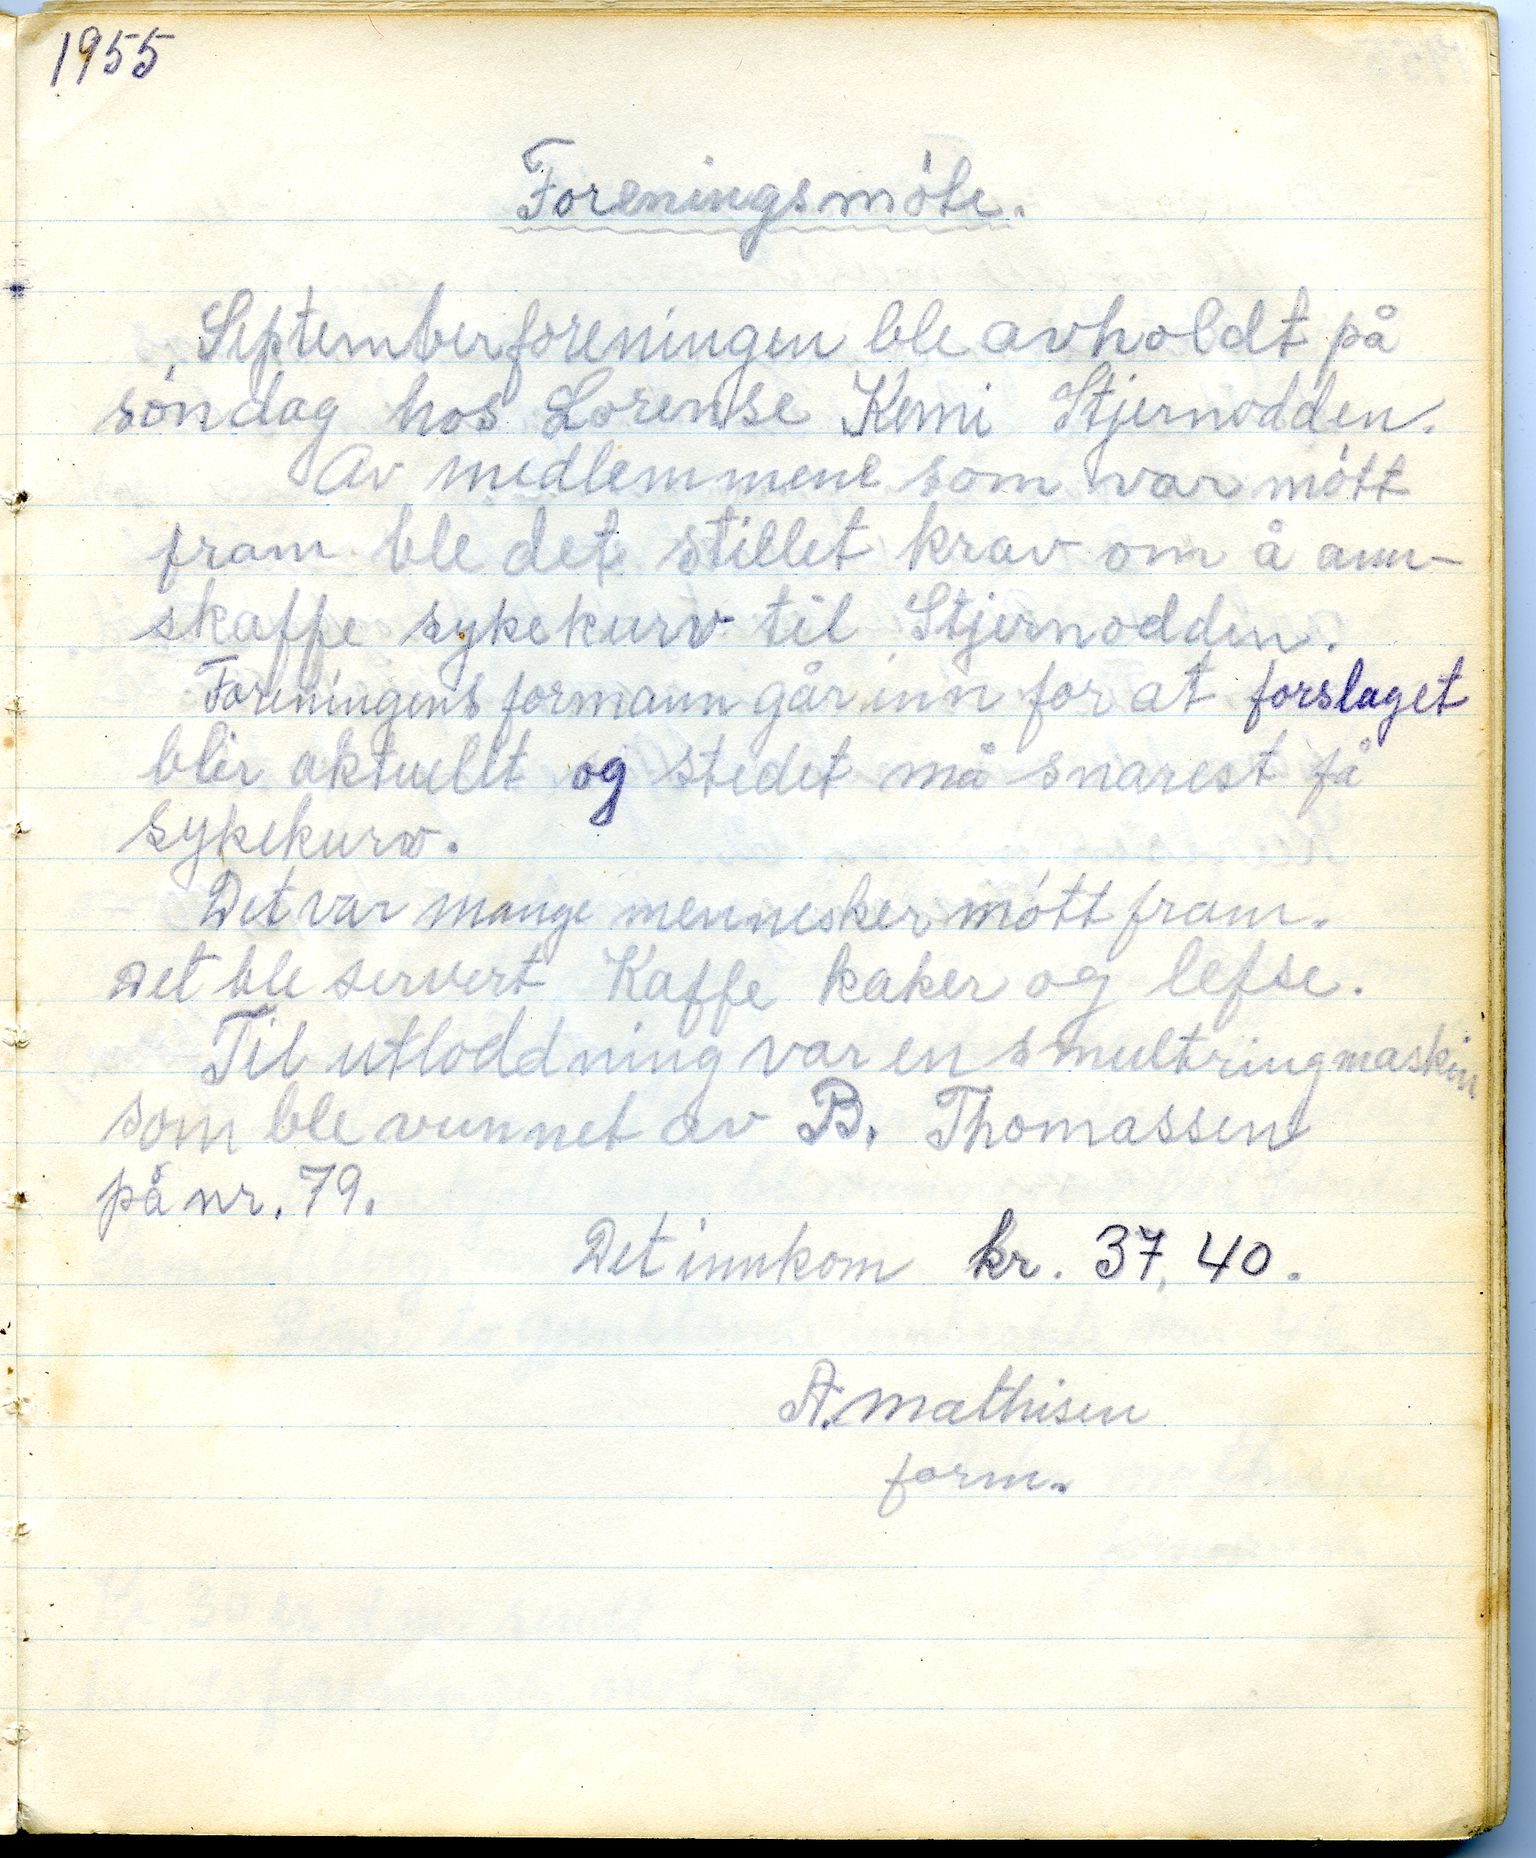 Hakkstabben-Altneset sanitetsforening, FMFB/A-1008/A/L0001: Møteprotokoll, 1947-1960